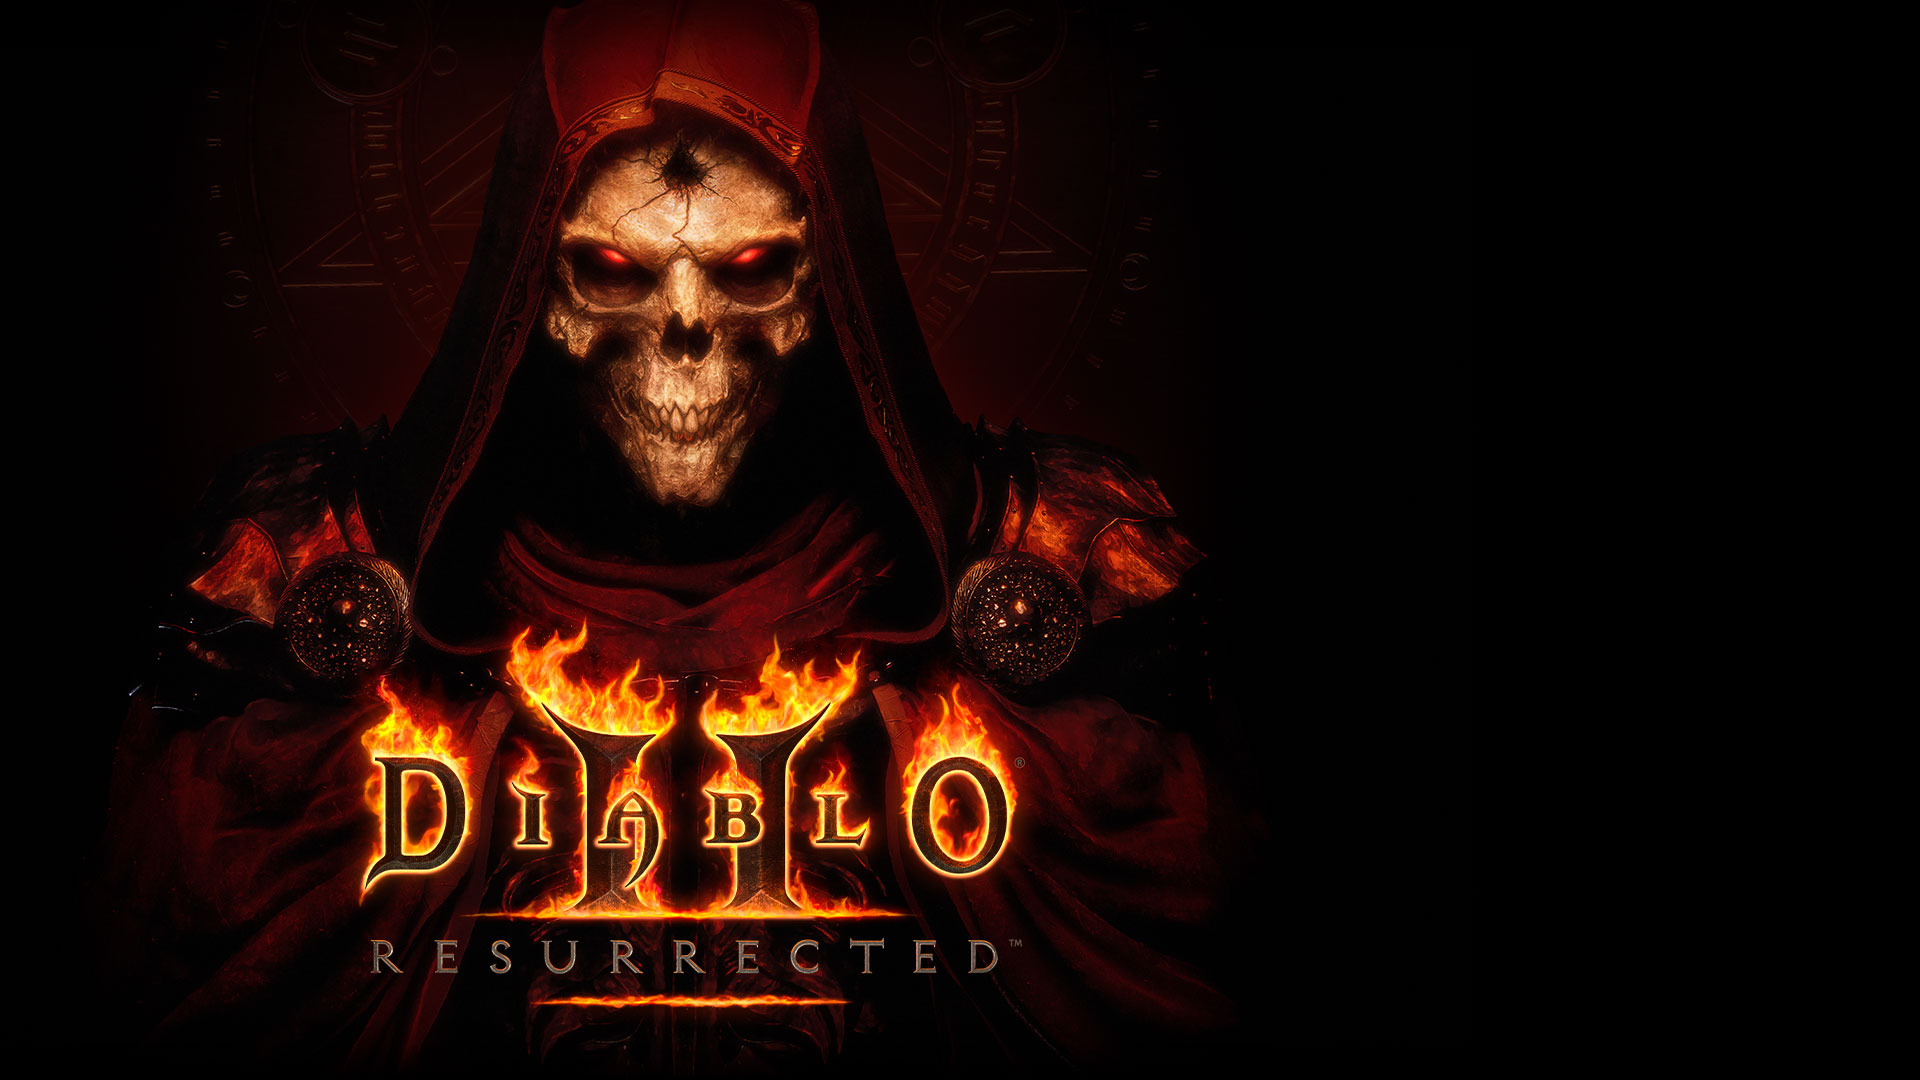 Het Diablo 2: Resurrected-logo over een skelet met gloeiende rode ogen en een donkerrode cape.